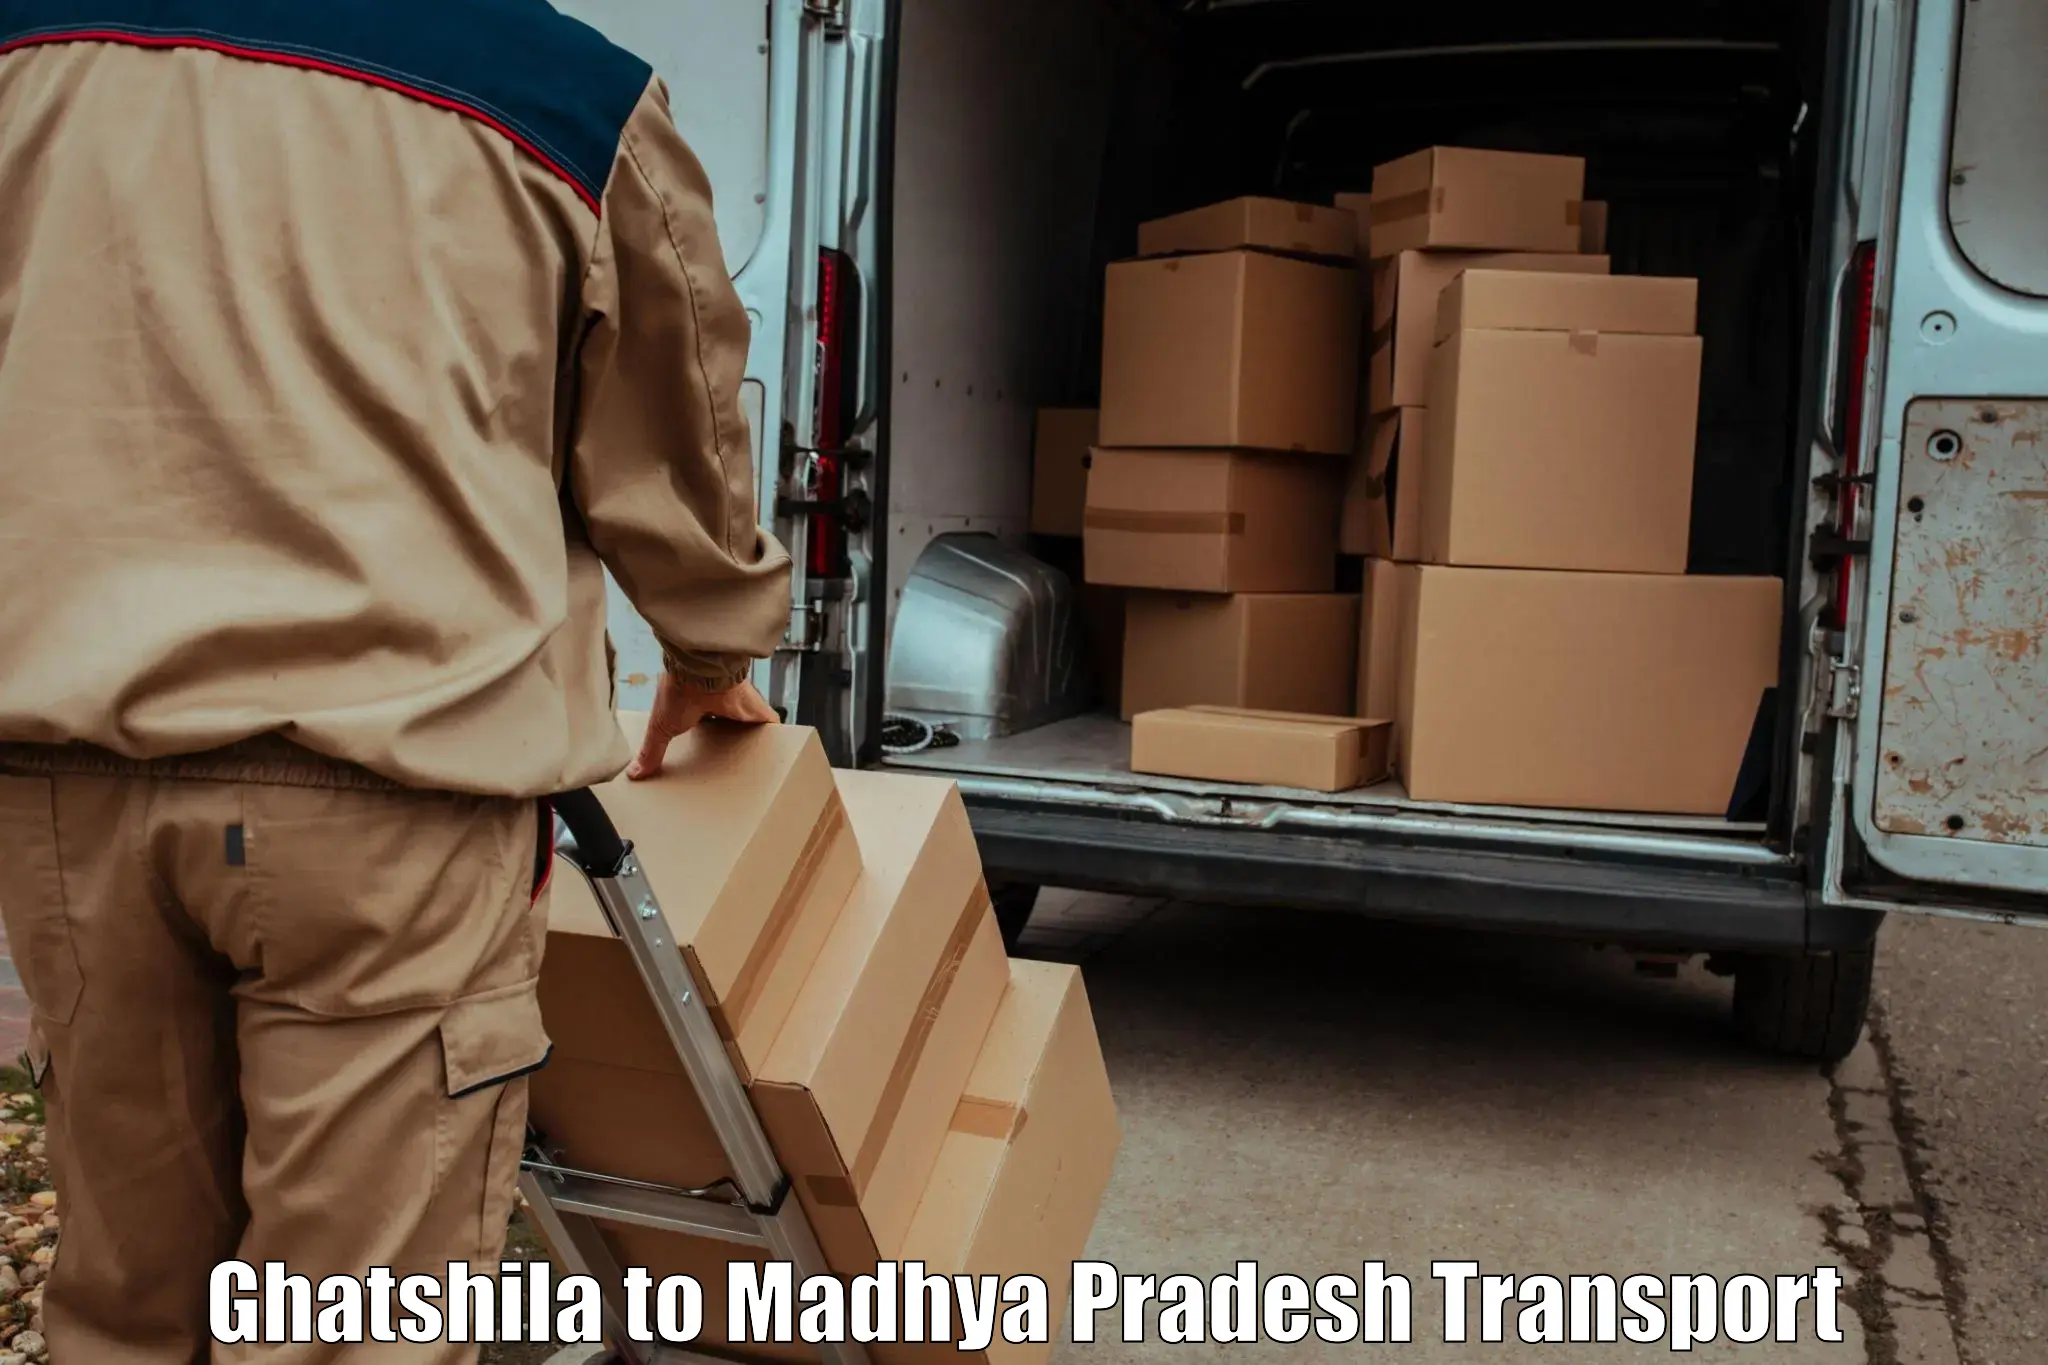 Daily transport service Ghatshila to Madhya Pradesh